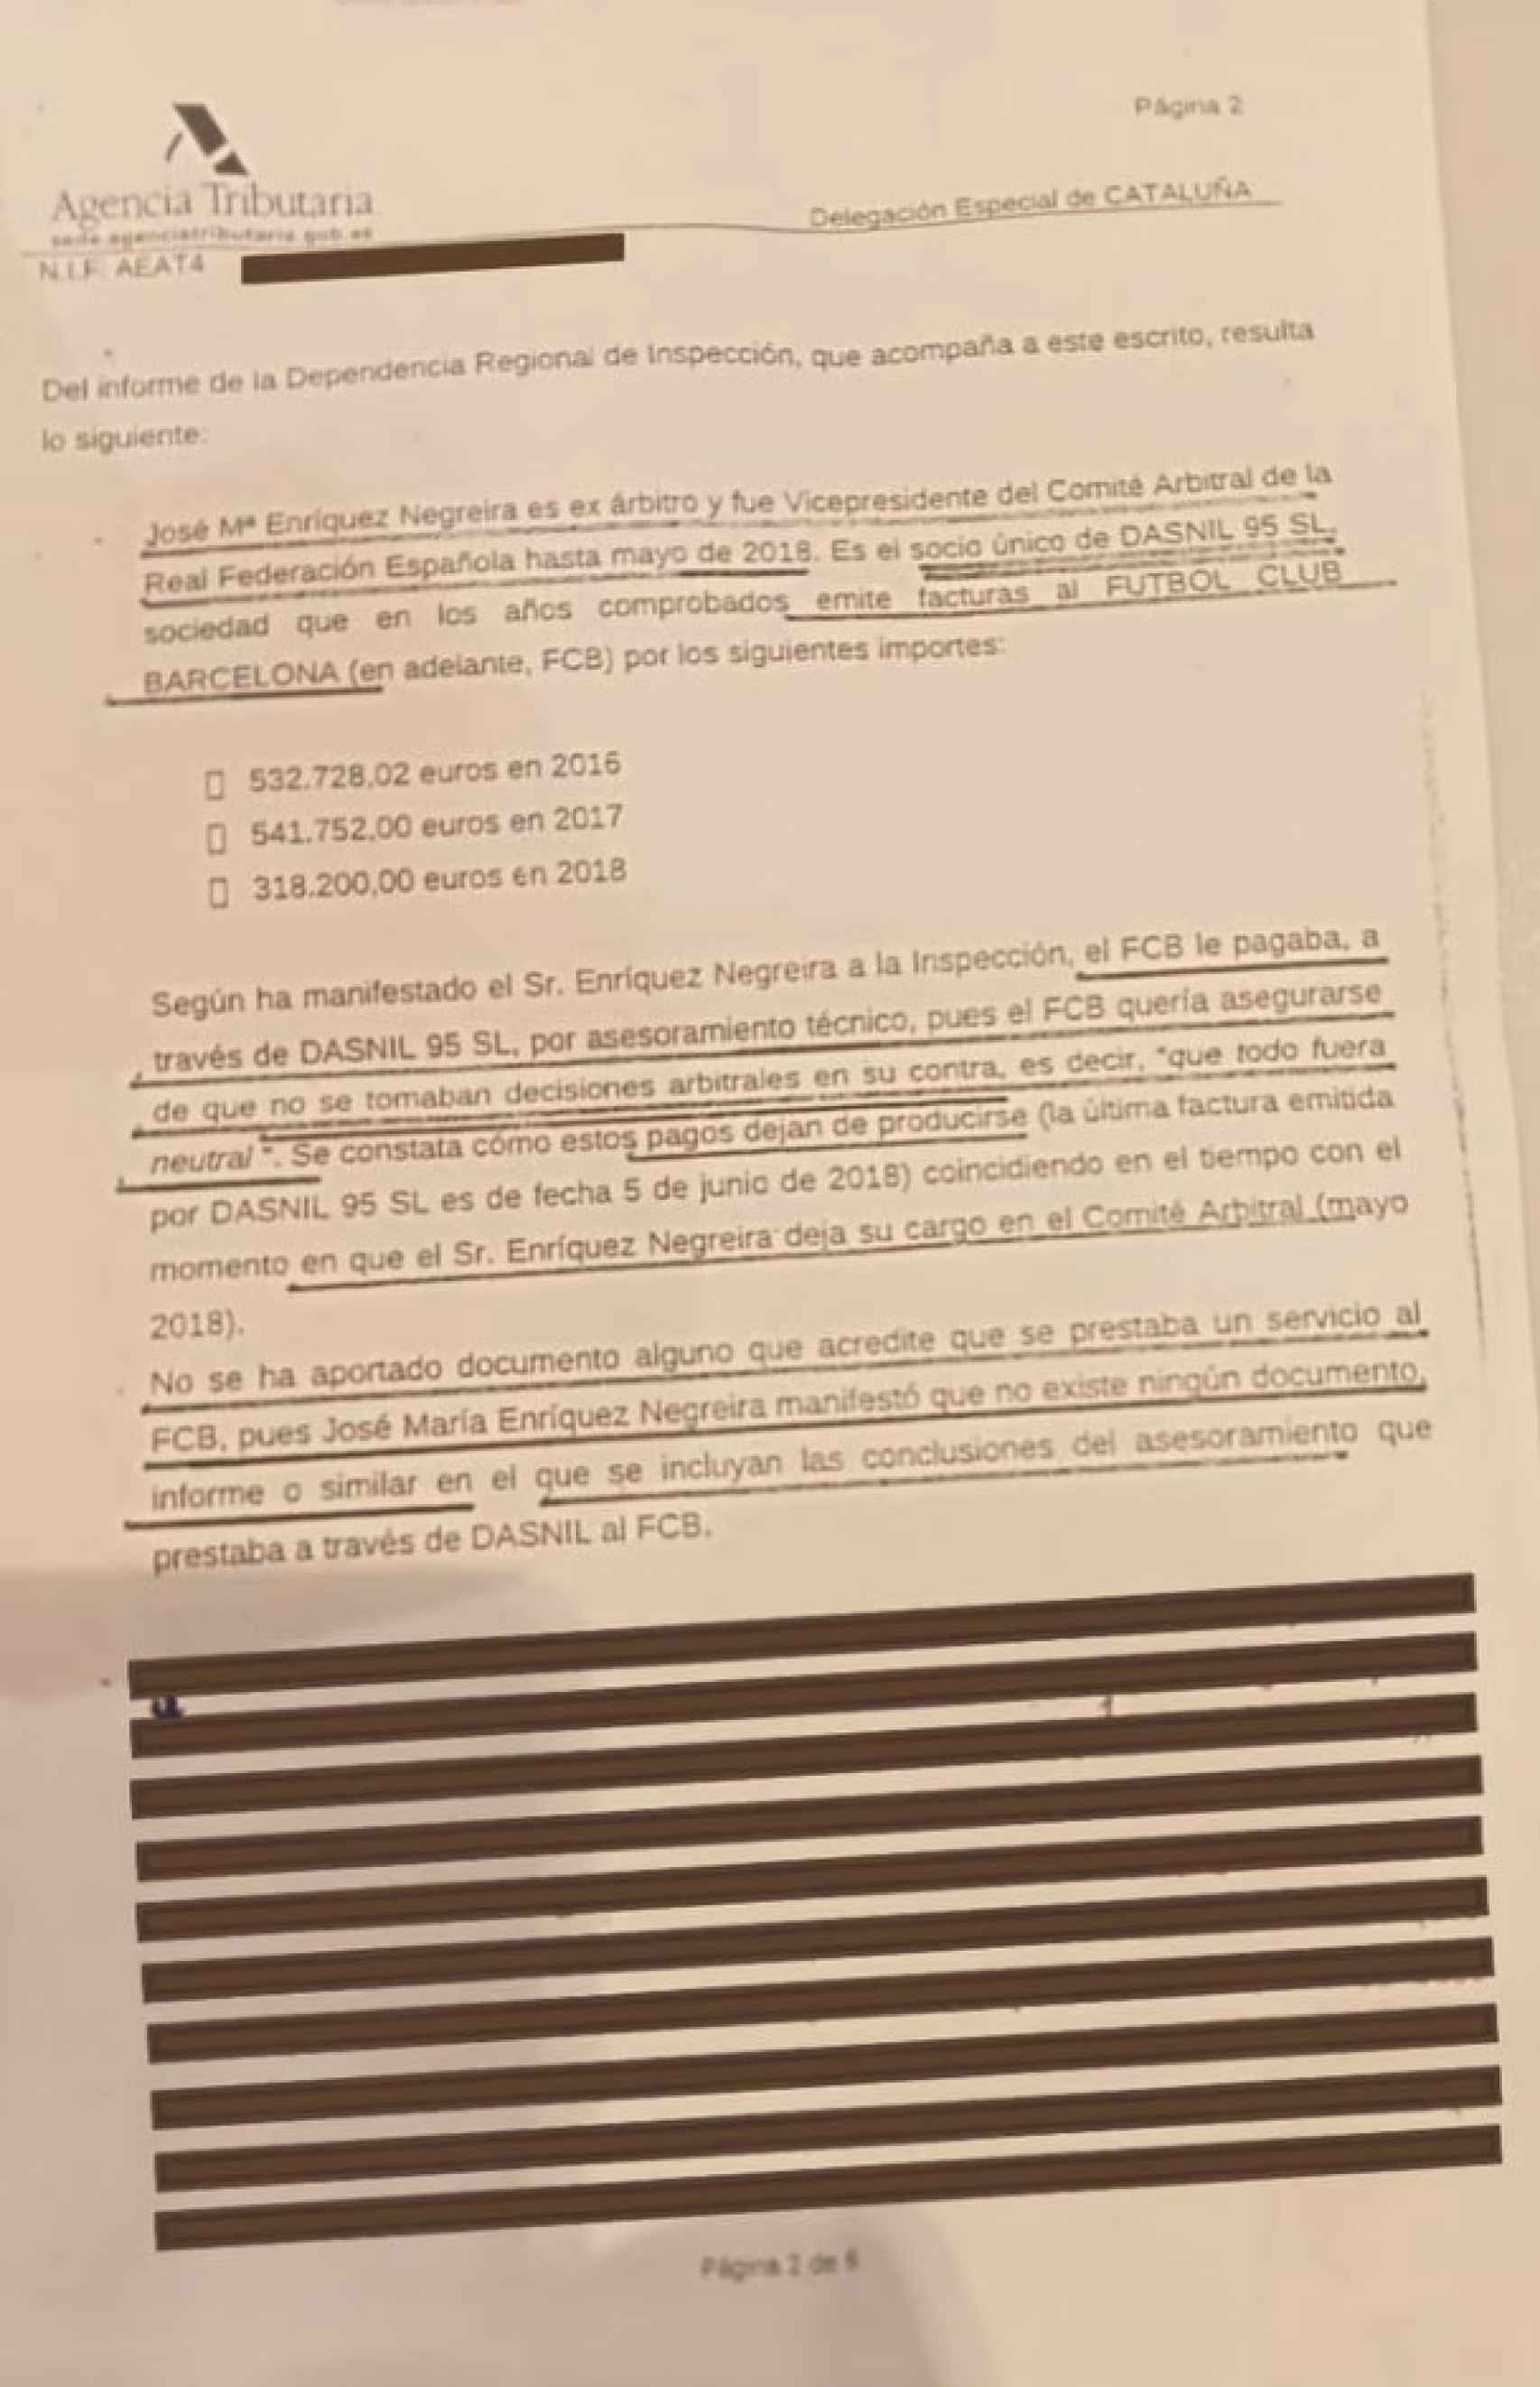 El informe de la Agencia Tributaria sobre la inspección a José María Enríquez Negreira